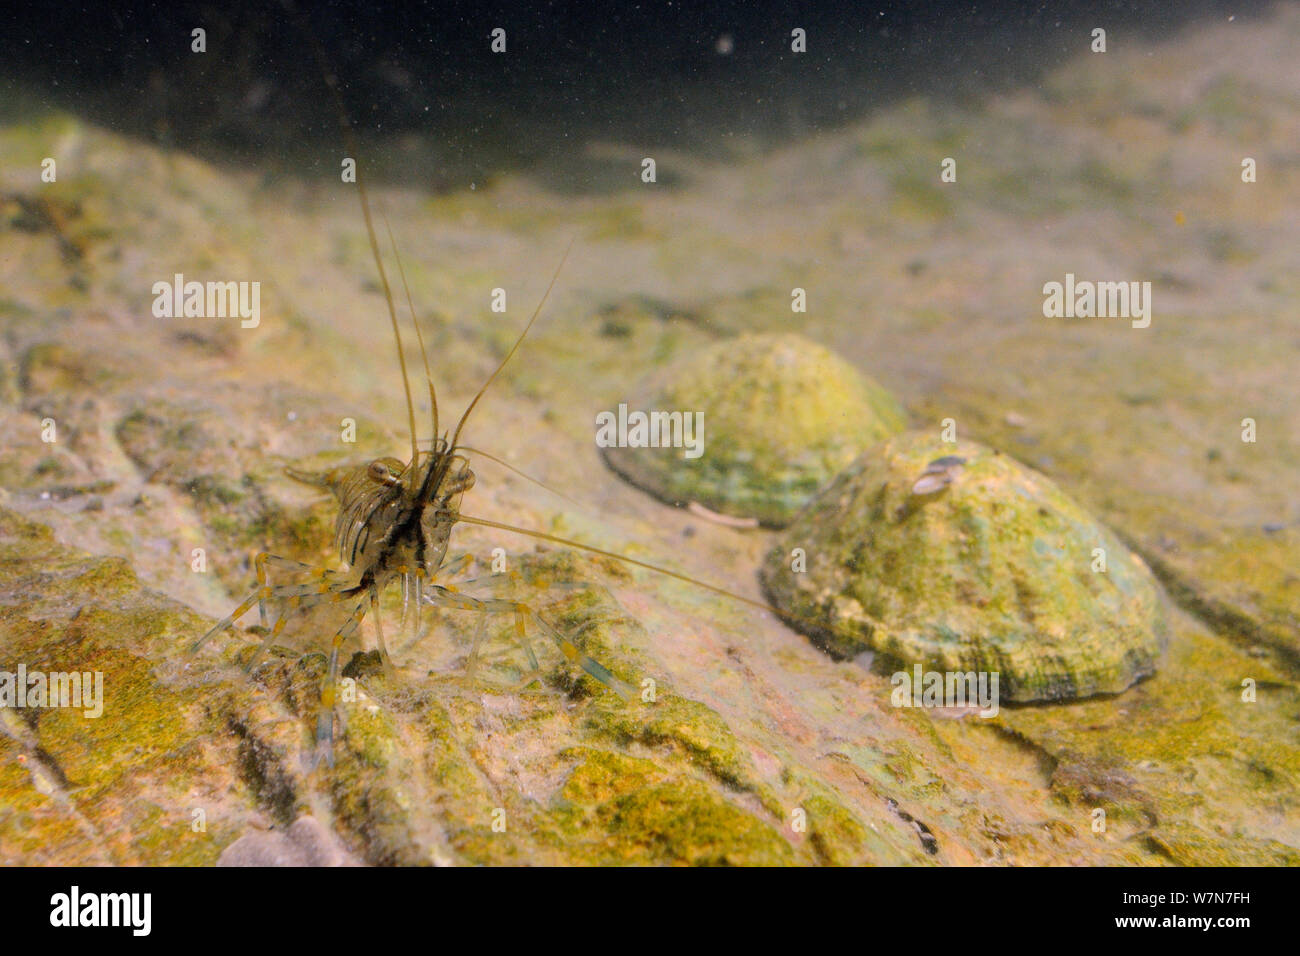 (Palaemon serratus) sur un rocher couvert d'algues dans un rockpool près de deux patelles (Patella vulgata). Rhossili, la péninsule de Gower, au Royaume-Uni, en juillet. Banque D'Images